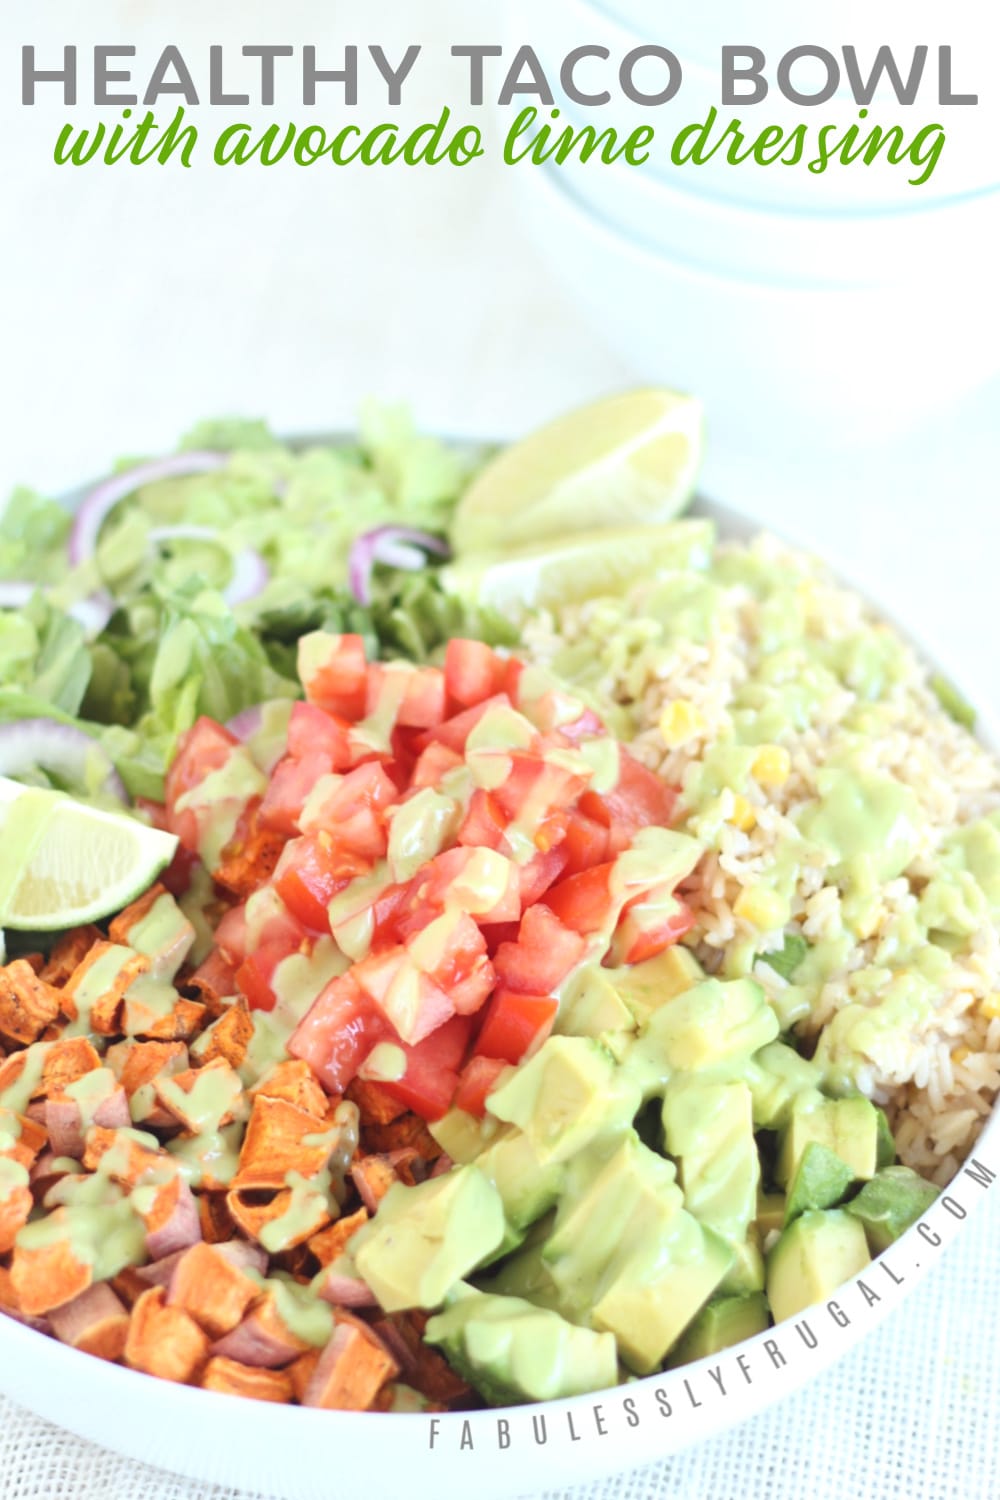 Taco bowl recipe with avocado lime dressing